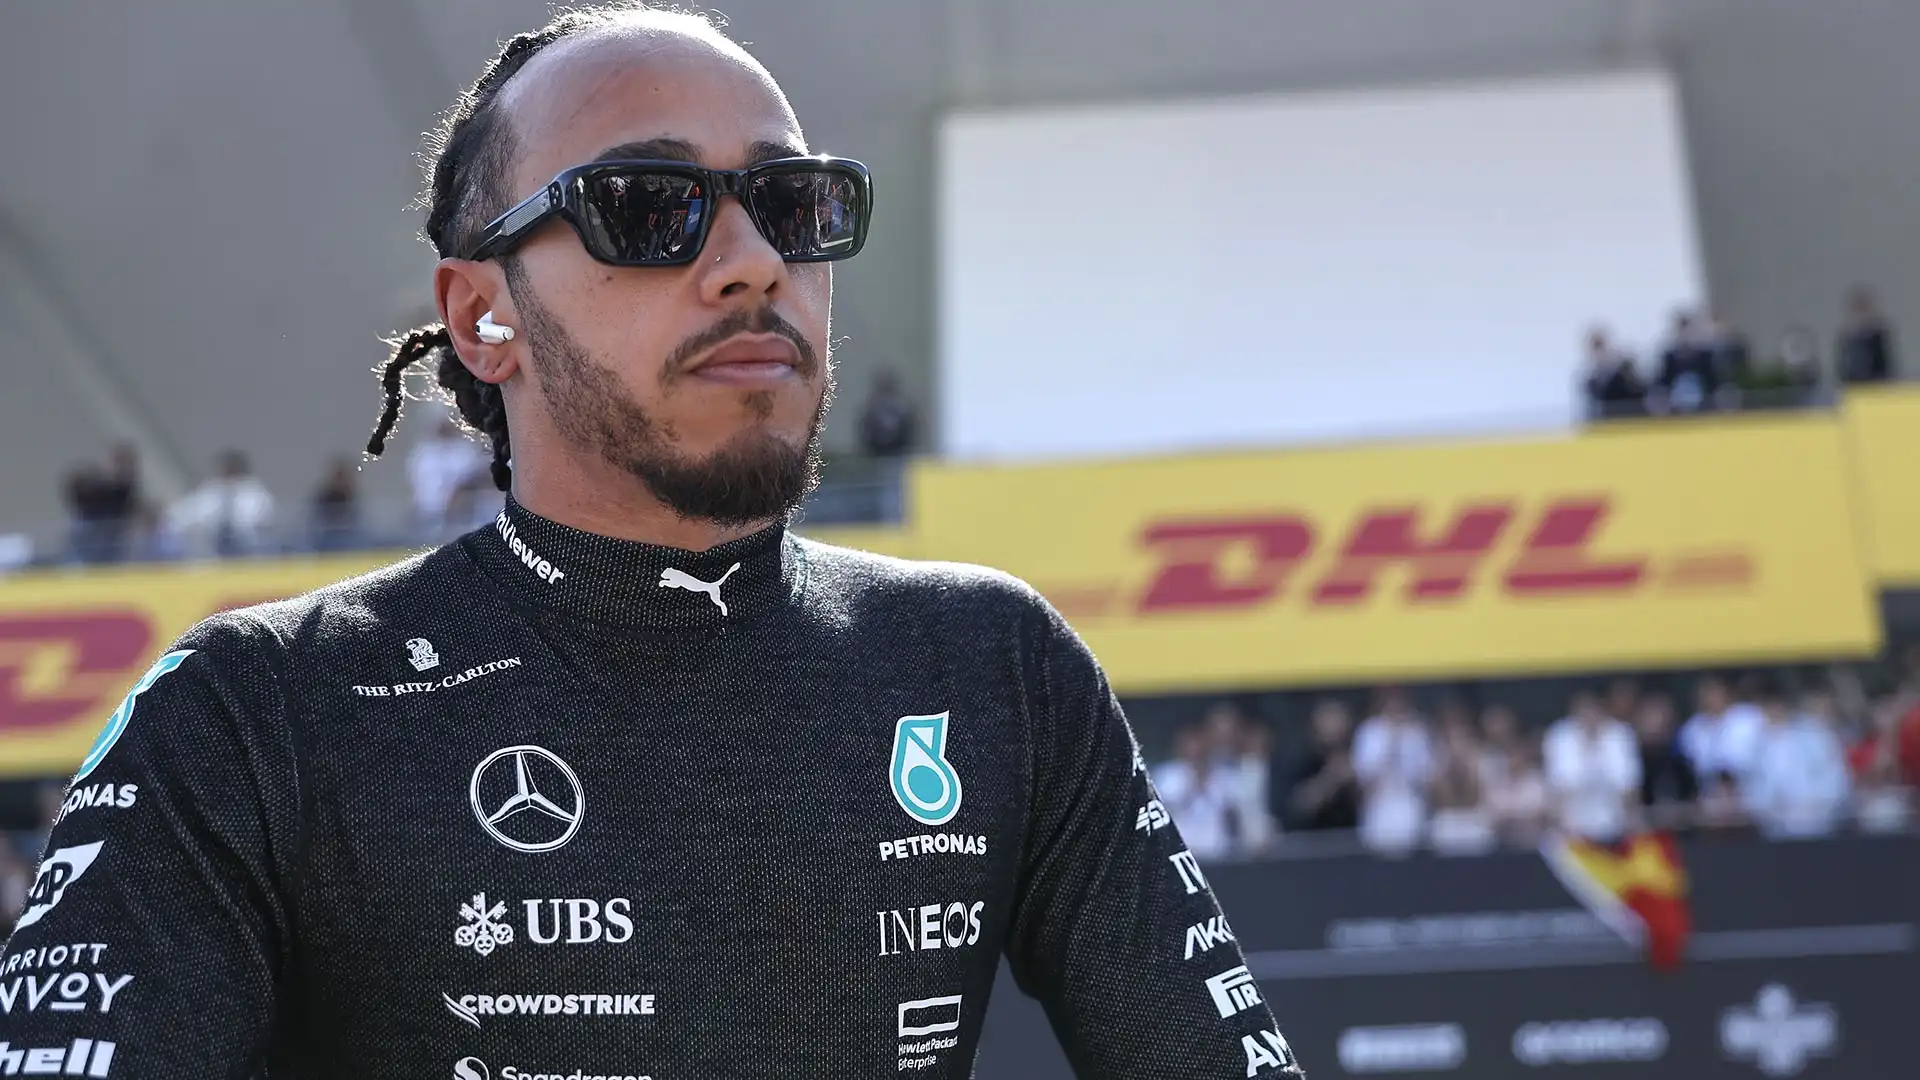 "Non credo di aver bisogno di una giustificazione per la mia decisione", ha spiegato Hamilton in conferenza stampa